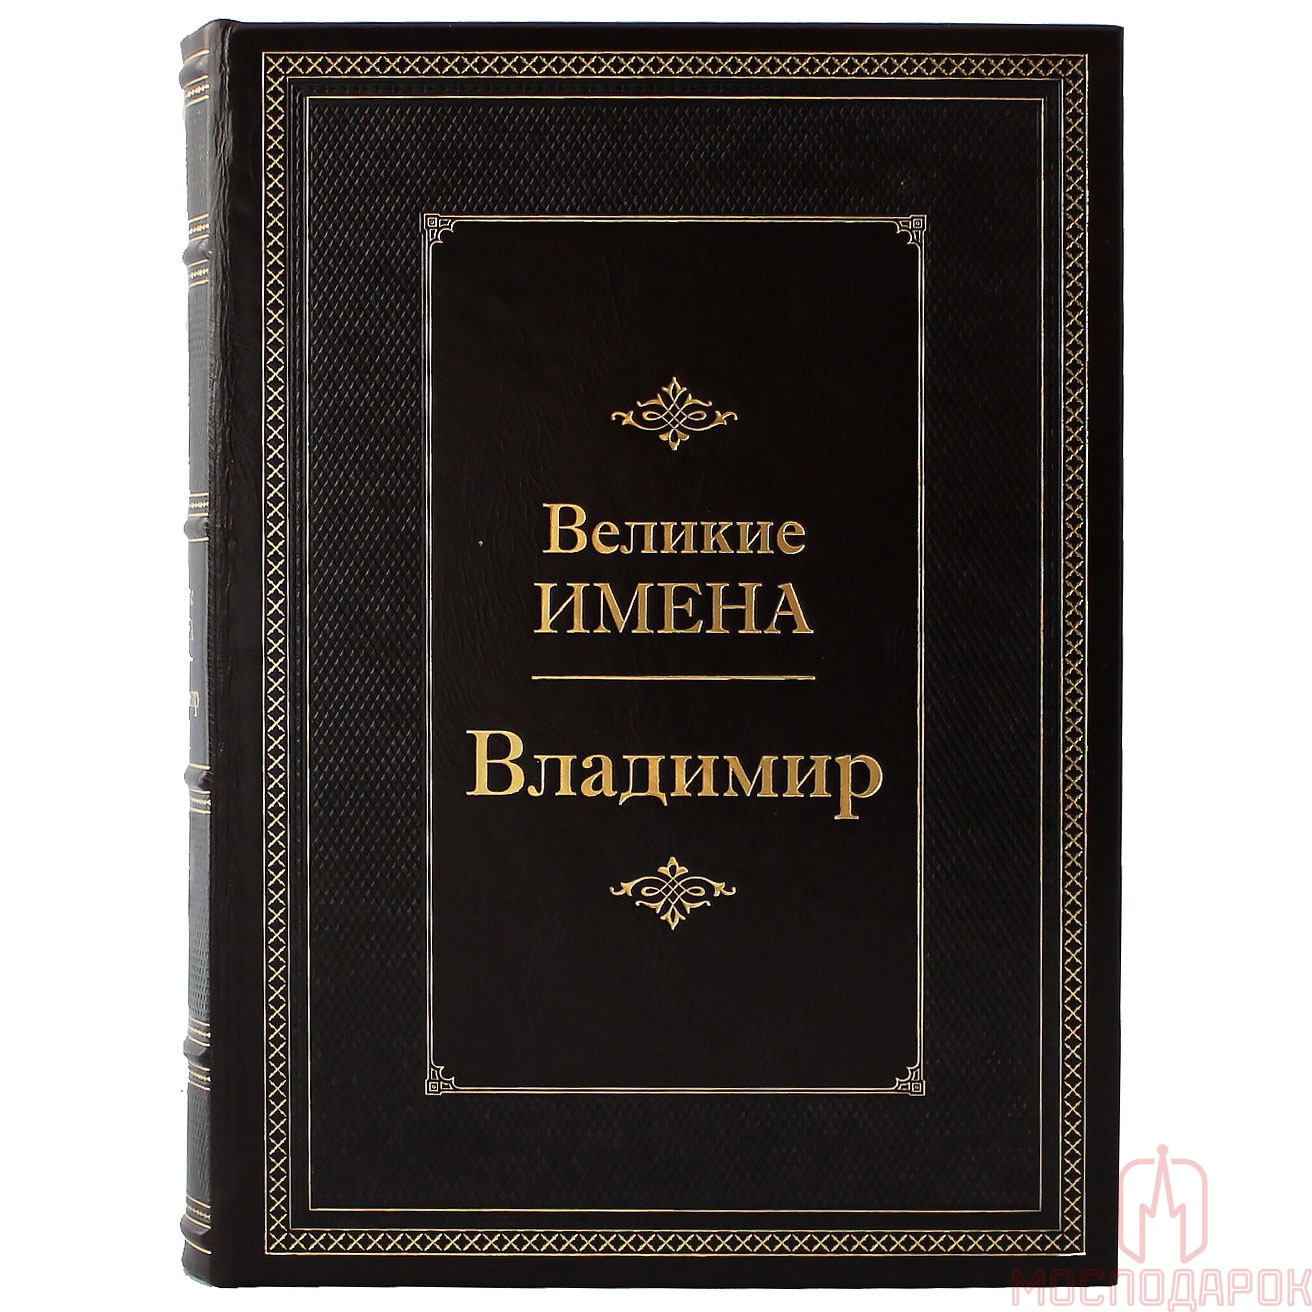 Подарочная книга "Великие имена" (Владимир) - артикул: 207946 | Мосподарок 